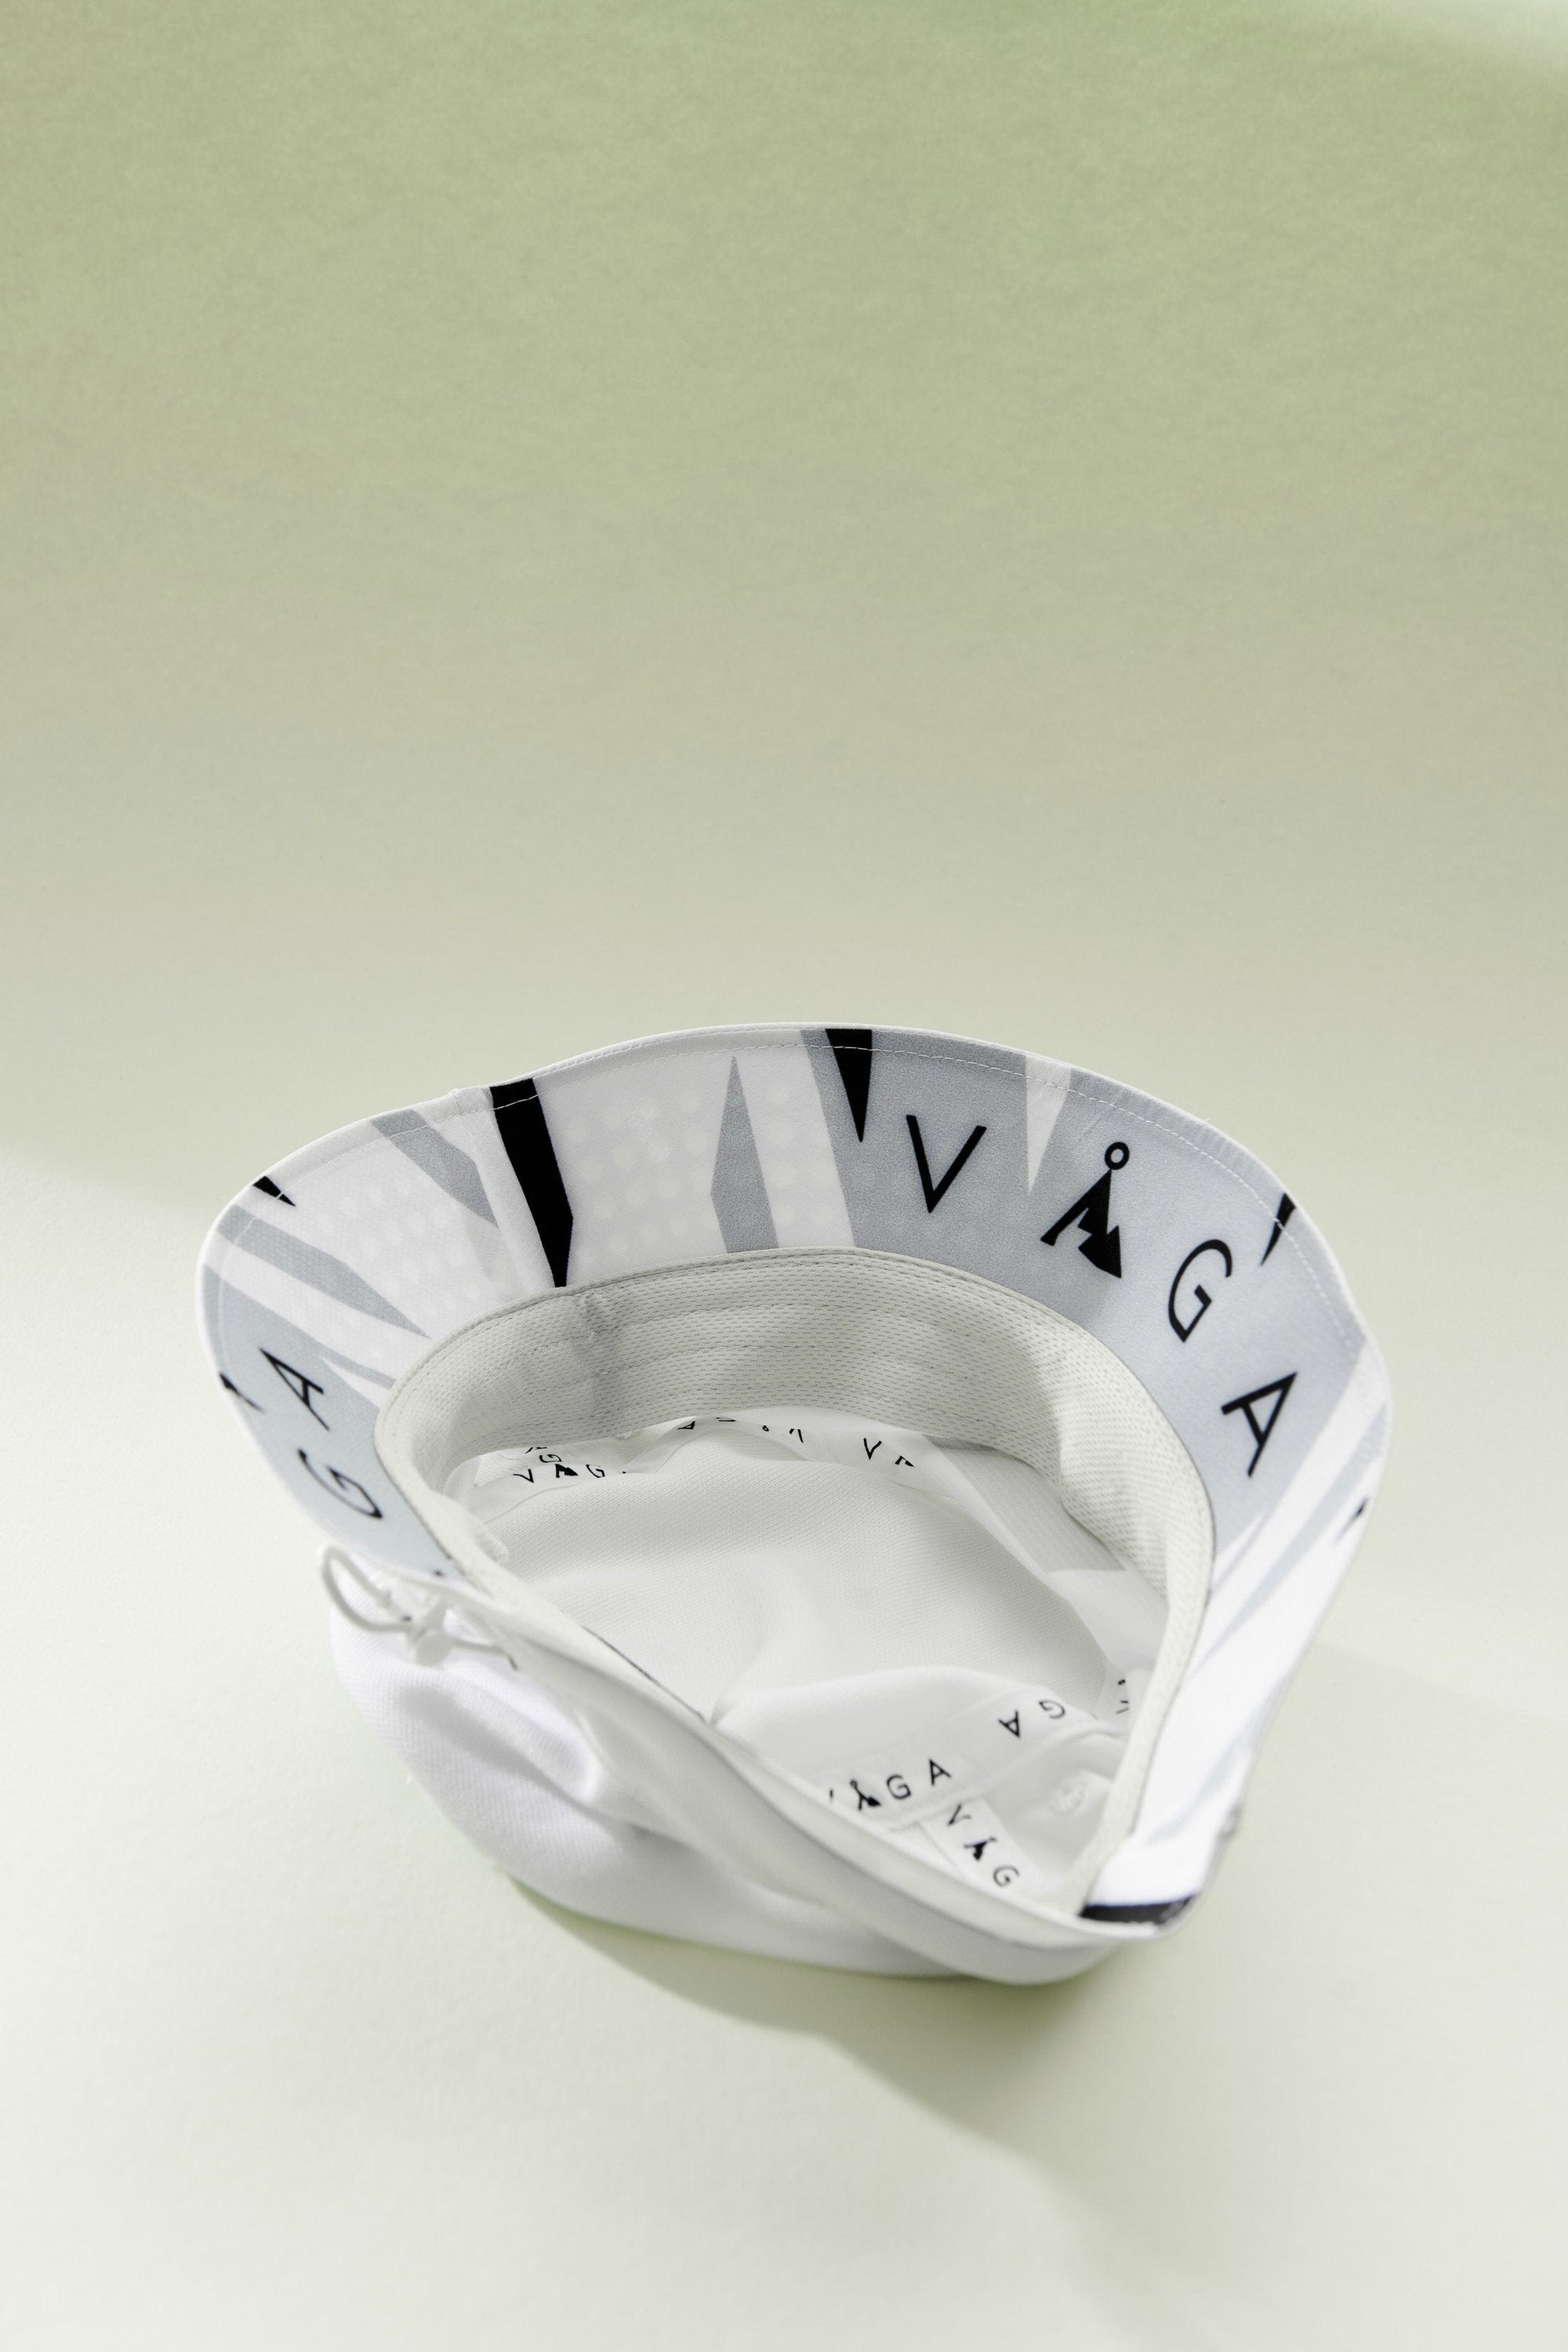 VAGA Feather Bucket Hat White/Mist Grey /Black S/M 